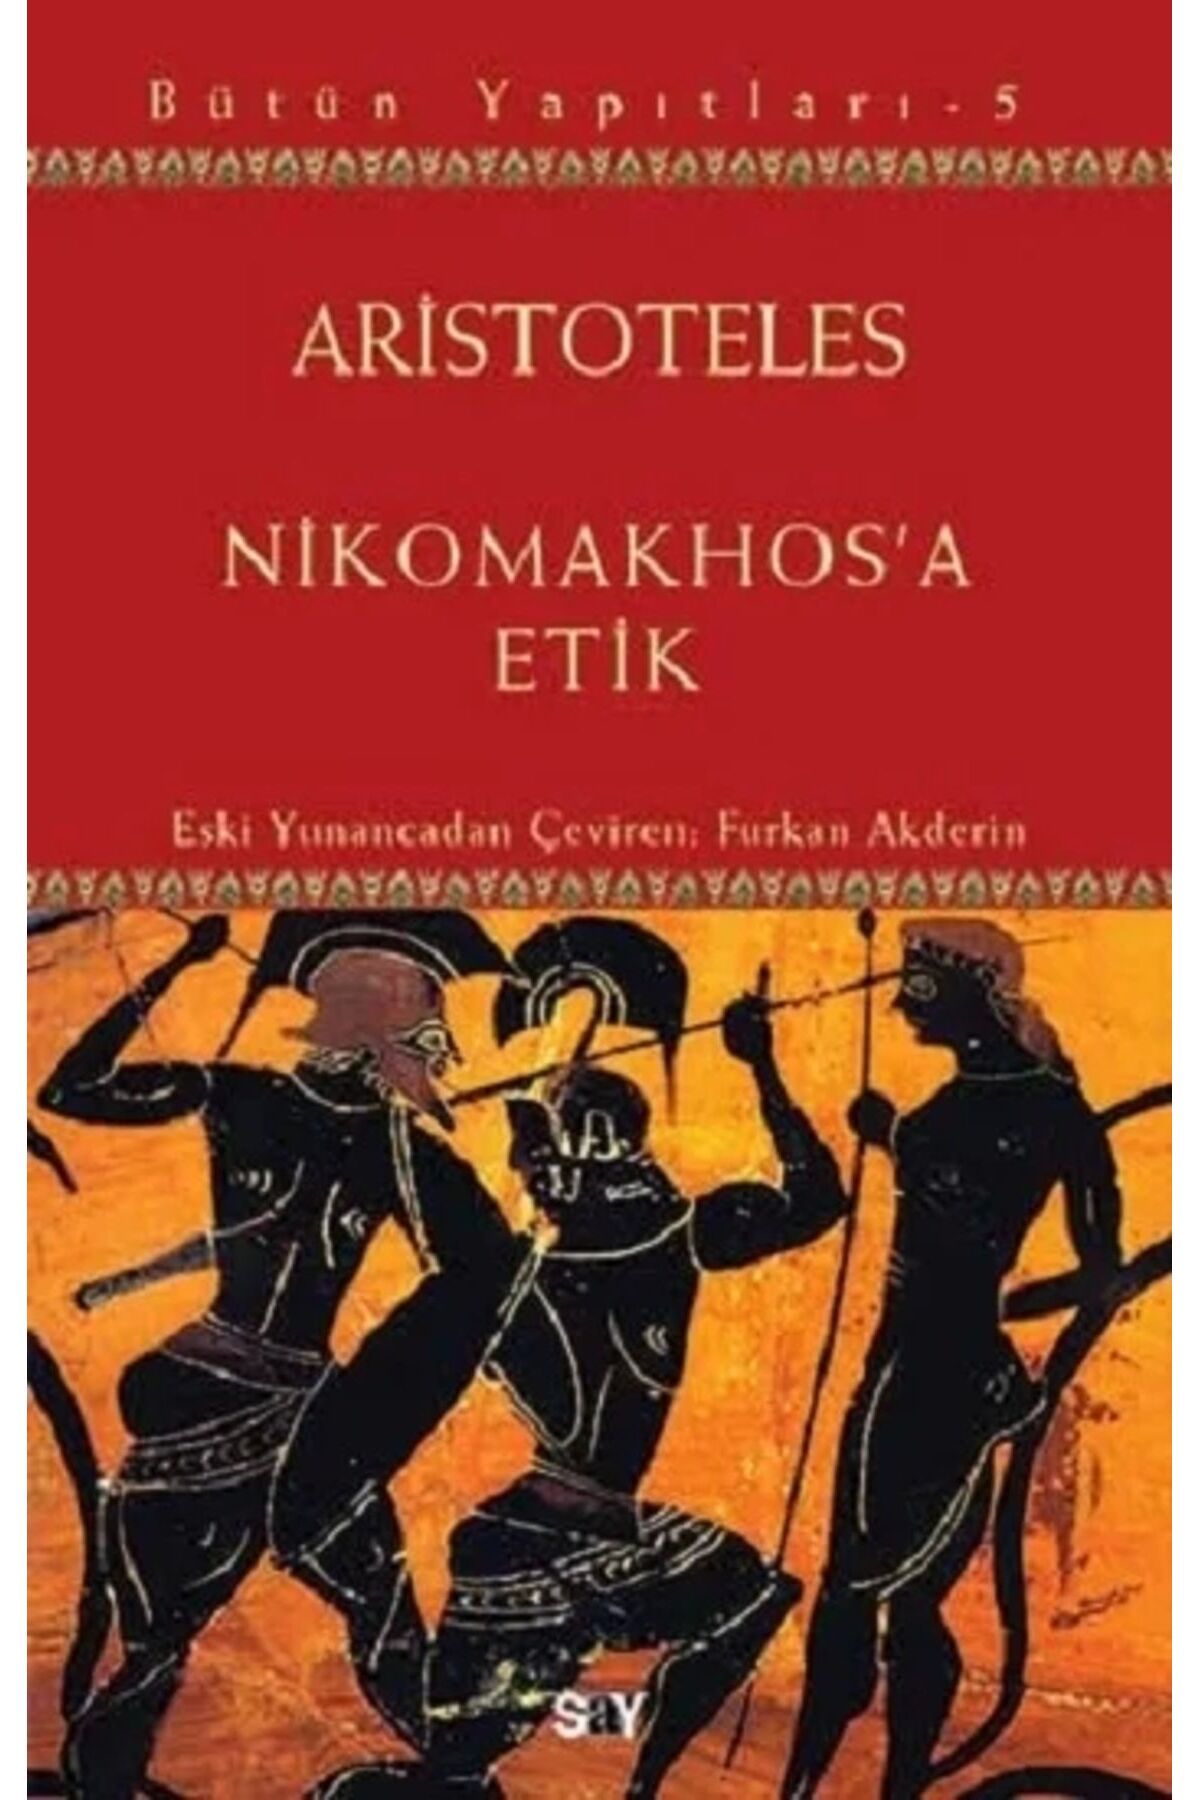 Say Yayınları Aristoteles Bütün Yapıtları 5 - Nikomakhos'a Etik